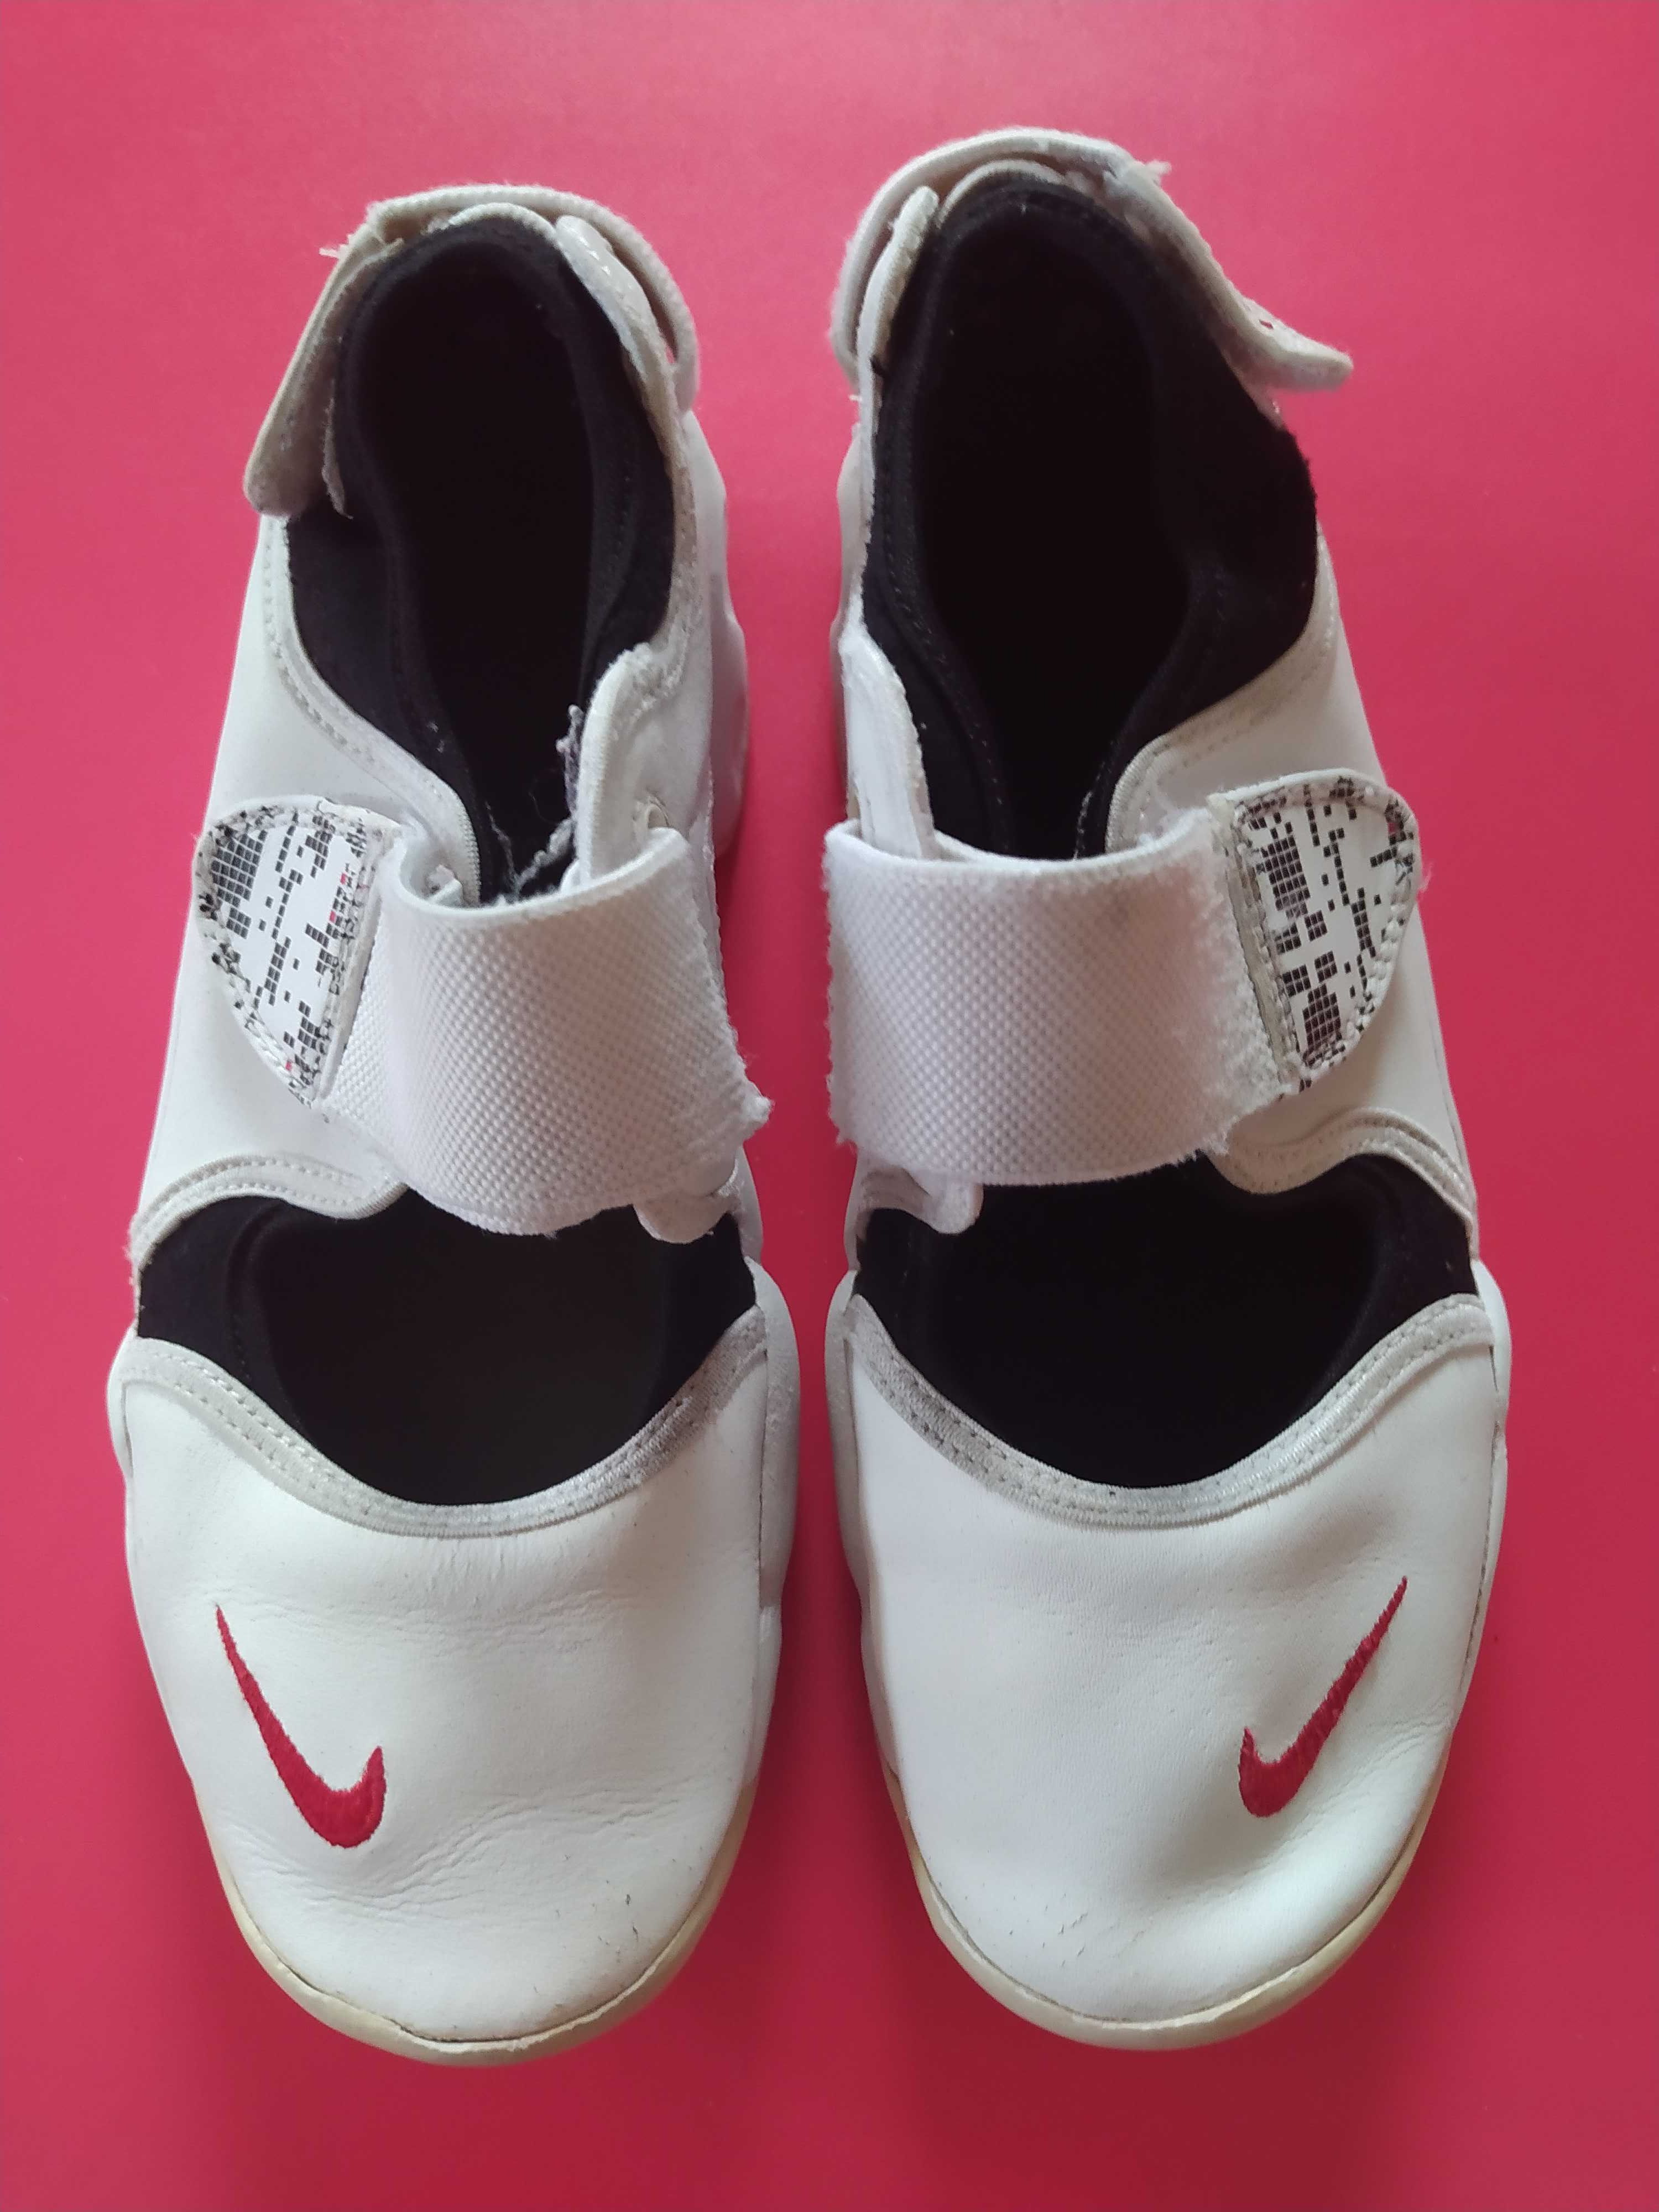 Baleriny Nike, 34/35, białe, rzepy.